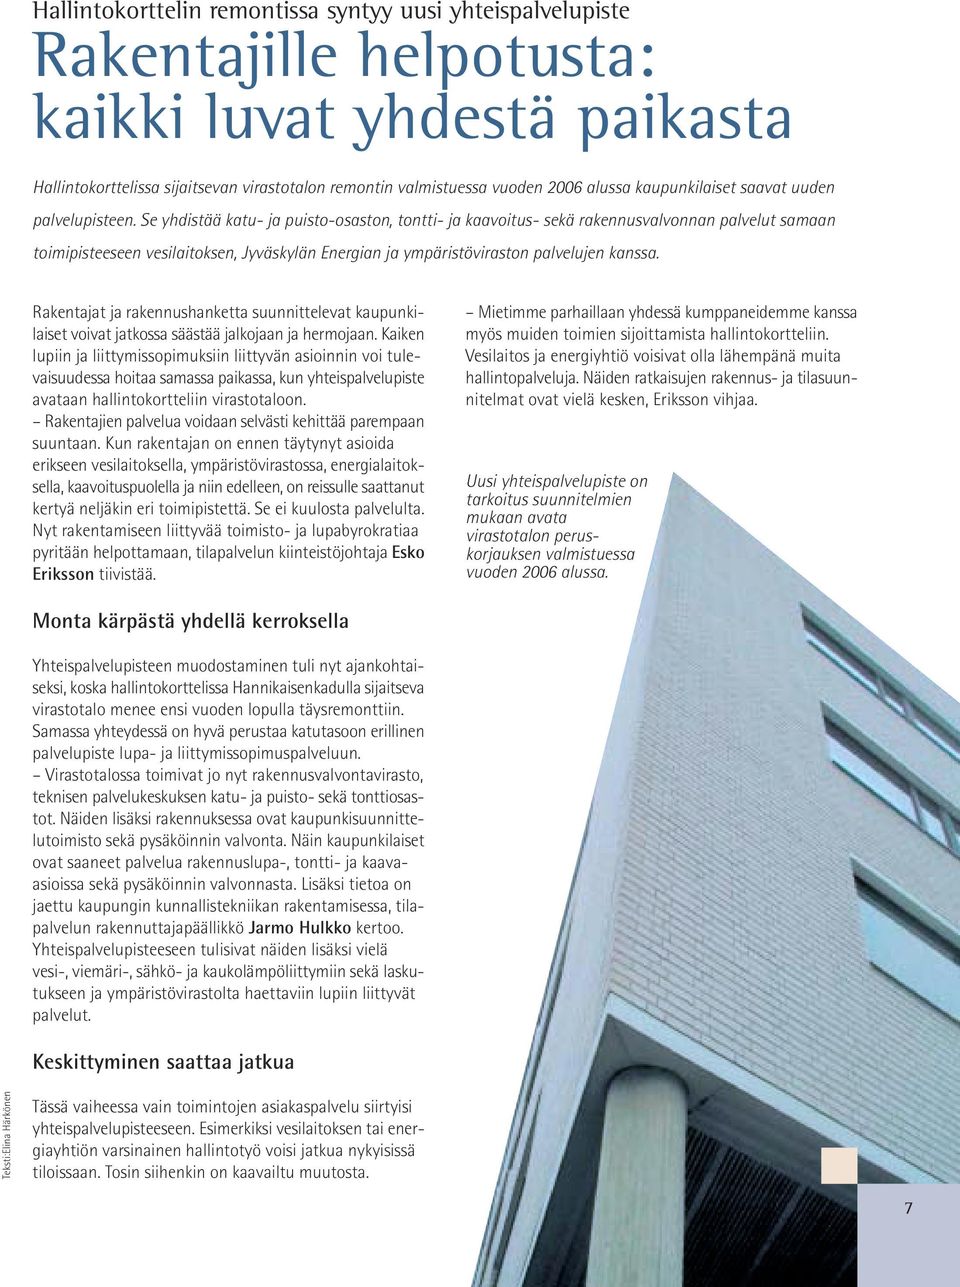 Se yhdistää katu- ja puisto-osaston, tontti- ja kaavoitus- sekä rakennusvalvonnan palvelut samaan toimipisteeseen vesilaitoksen, Jyväskylän Energian ja ympäristöviraston palvelujen kanssa.